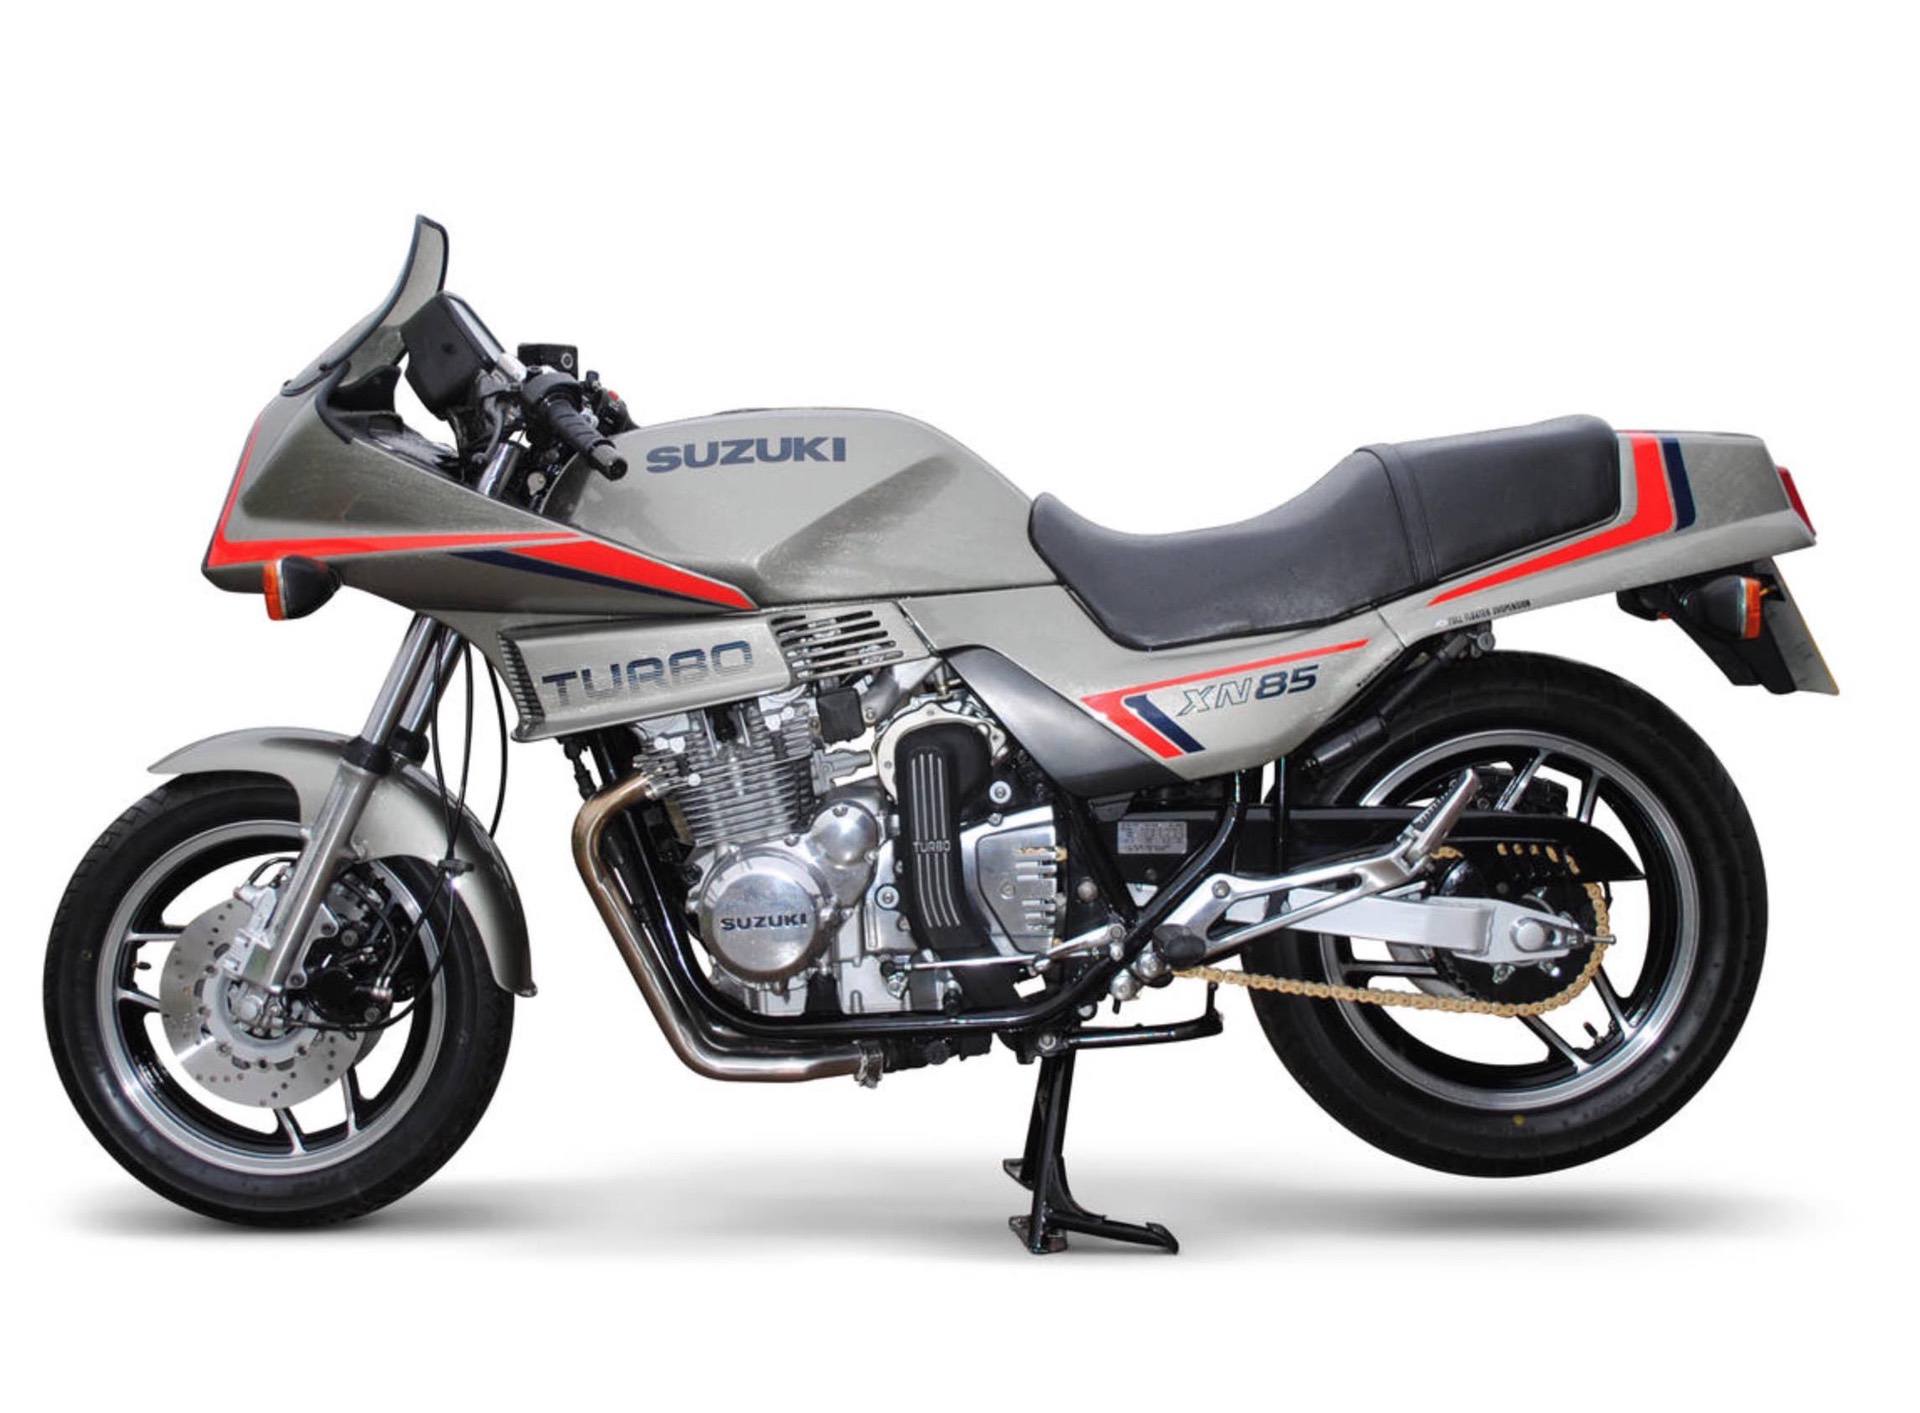   Una motocicleta Suzuki XV85 Turbo